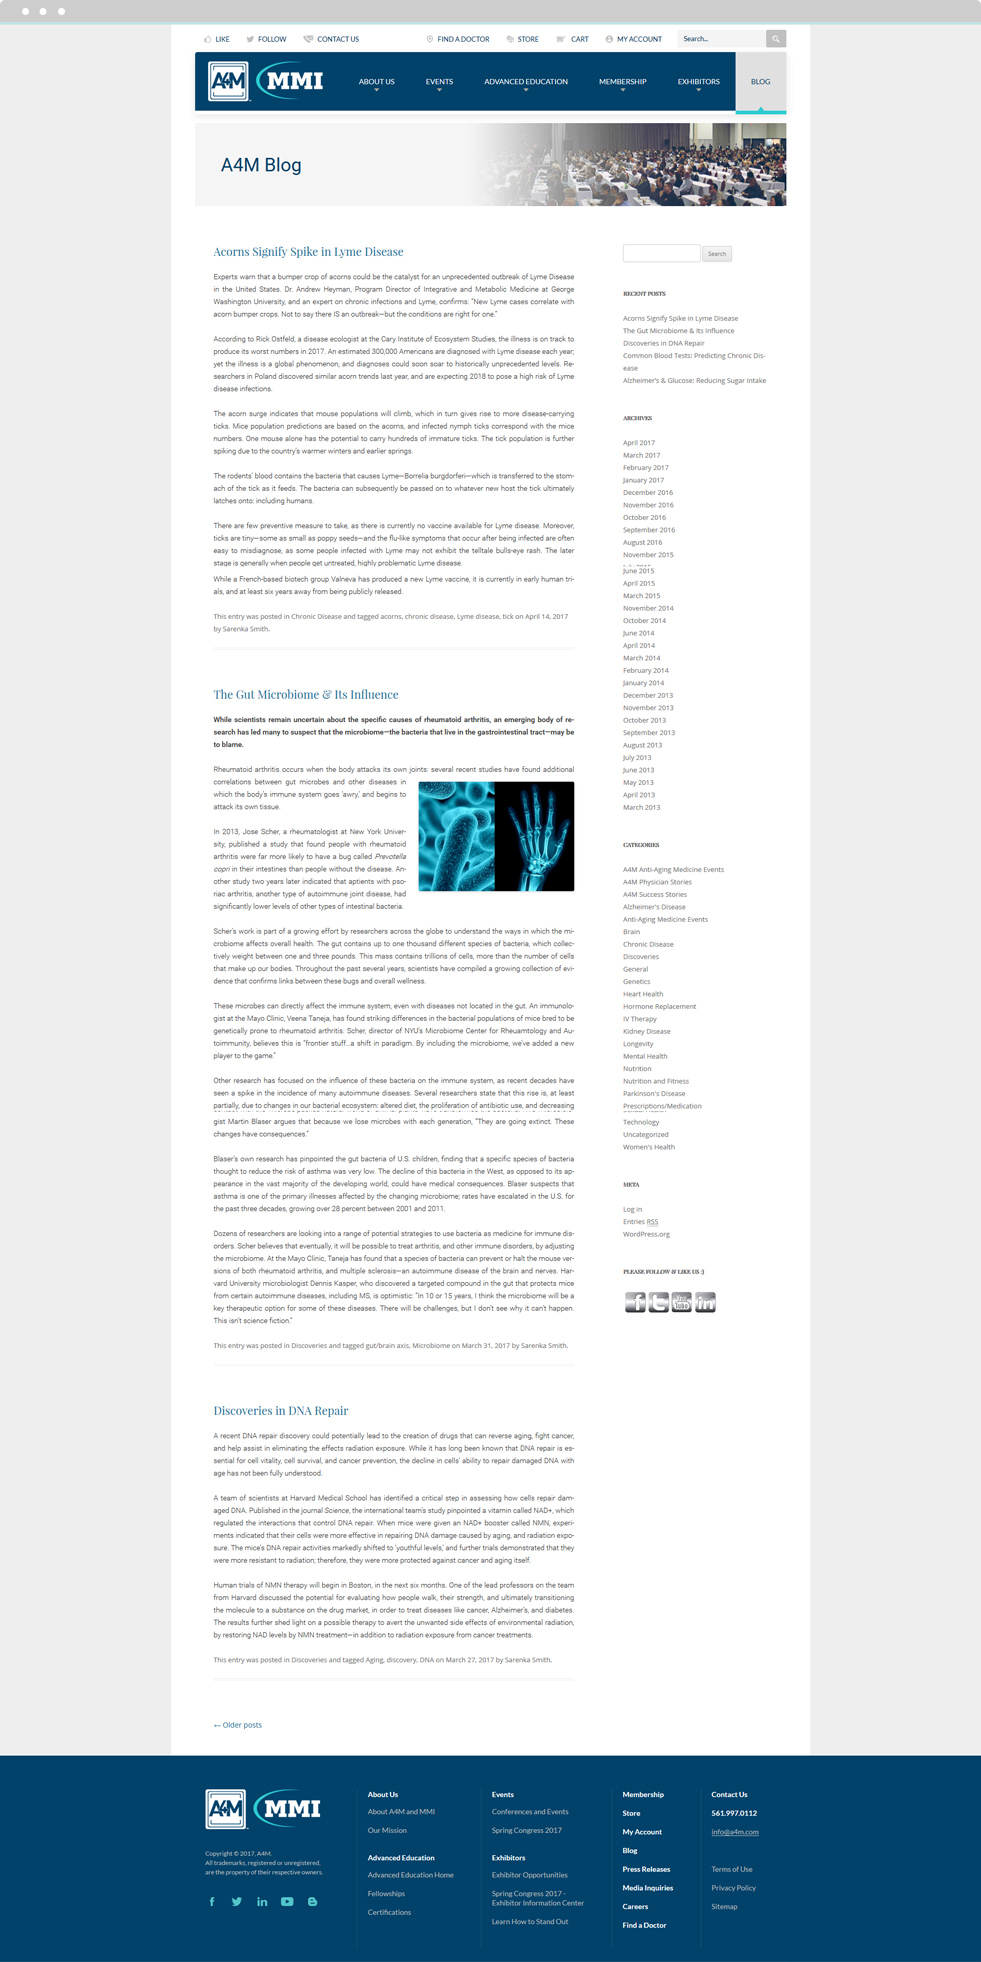 Enterprise Medical Blogs Website Design - A4M Blog - Homepage